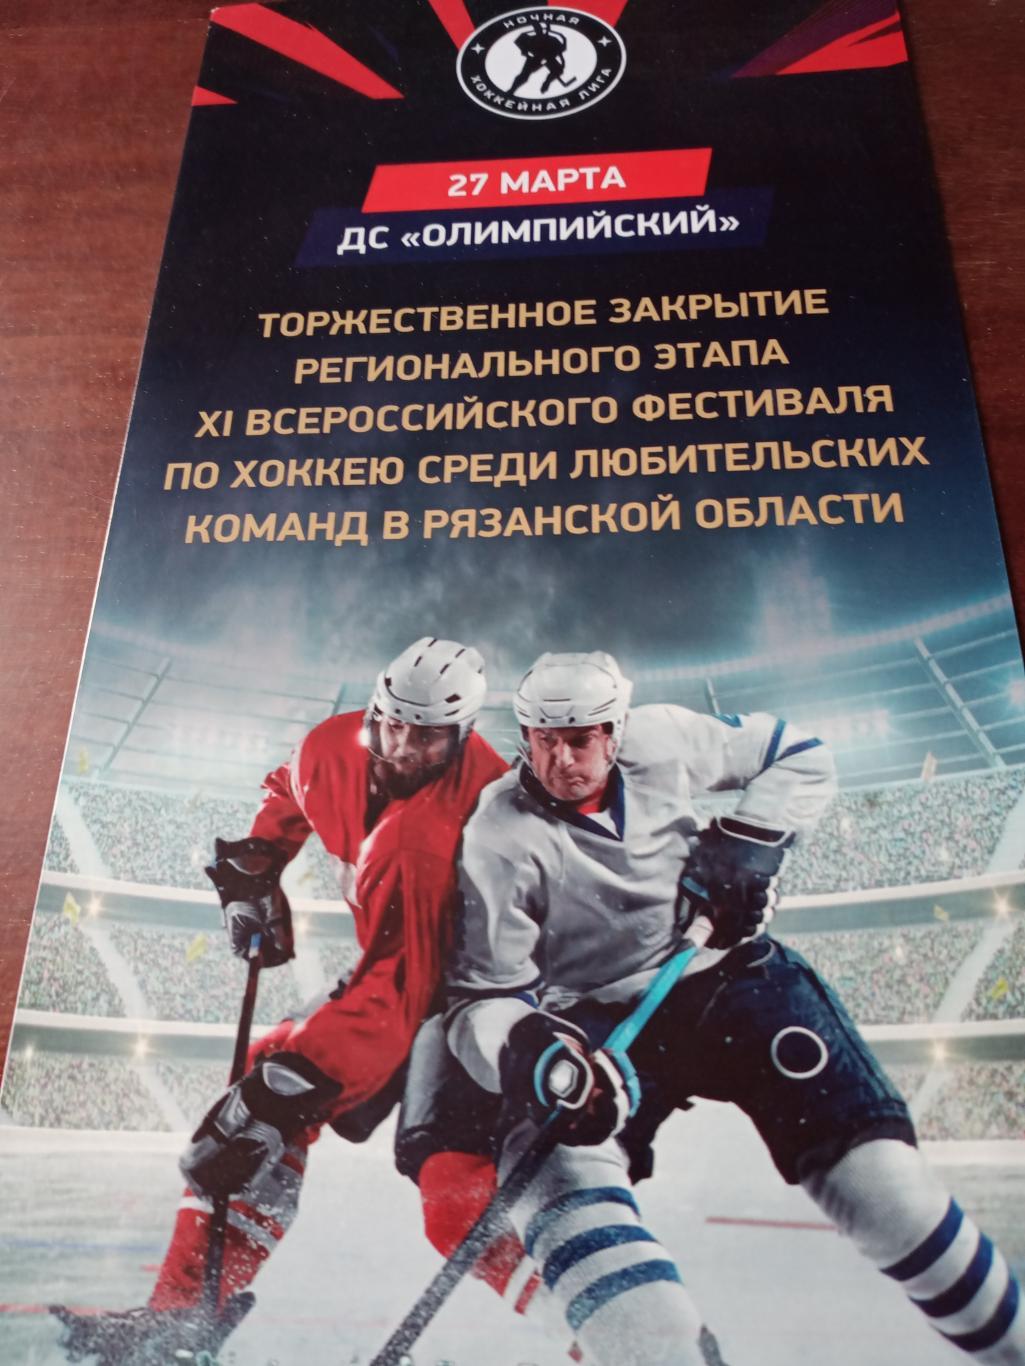 11 Всероссийский фестиваль любительских команд по хоккею. 2022 год